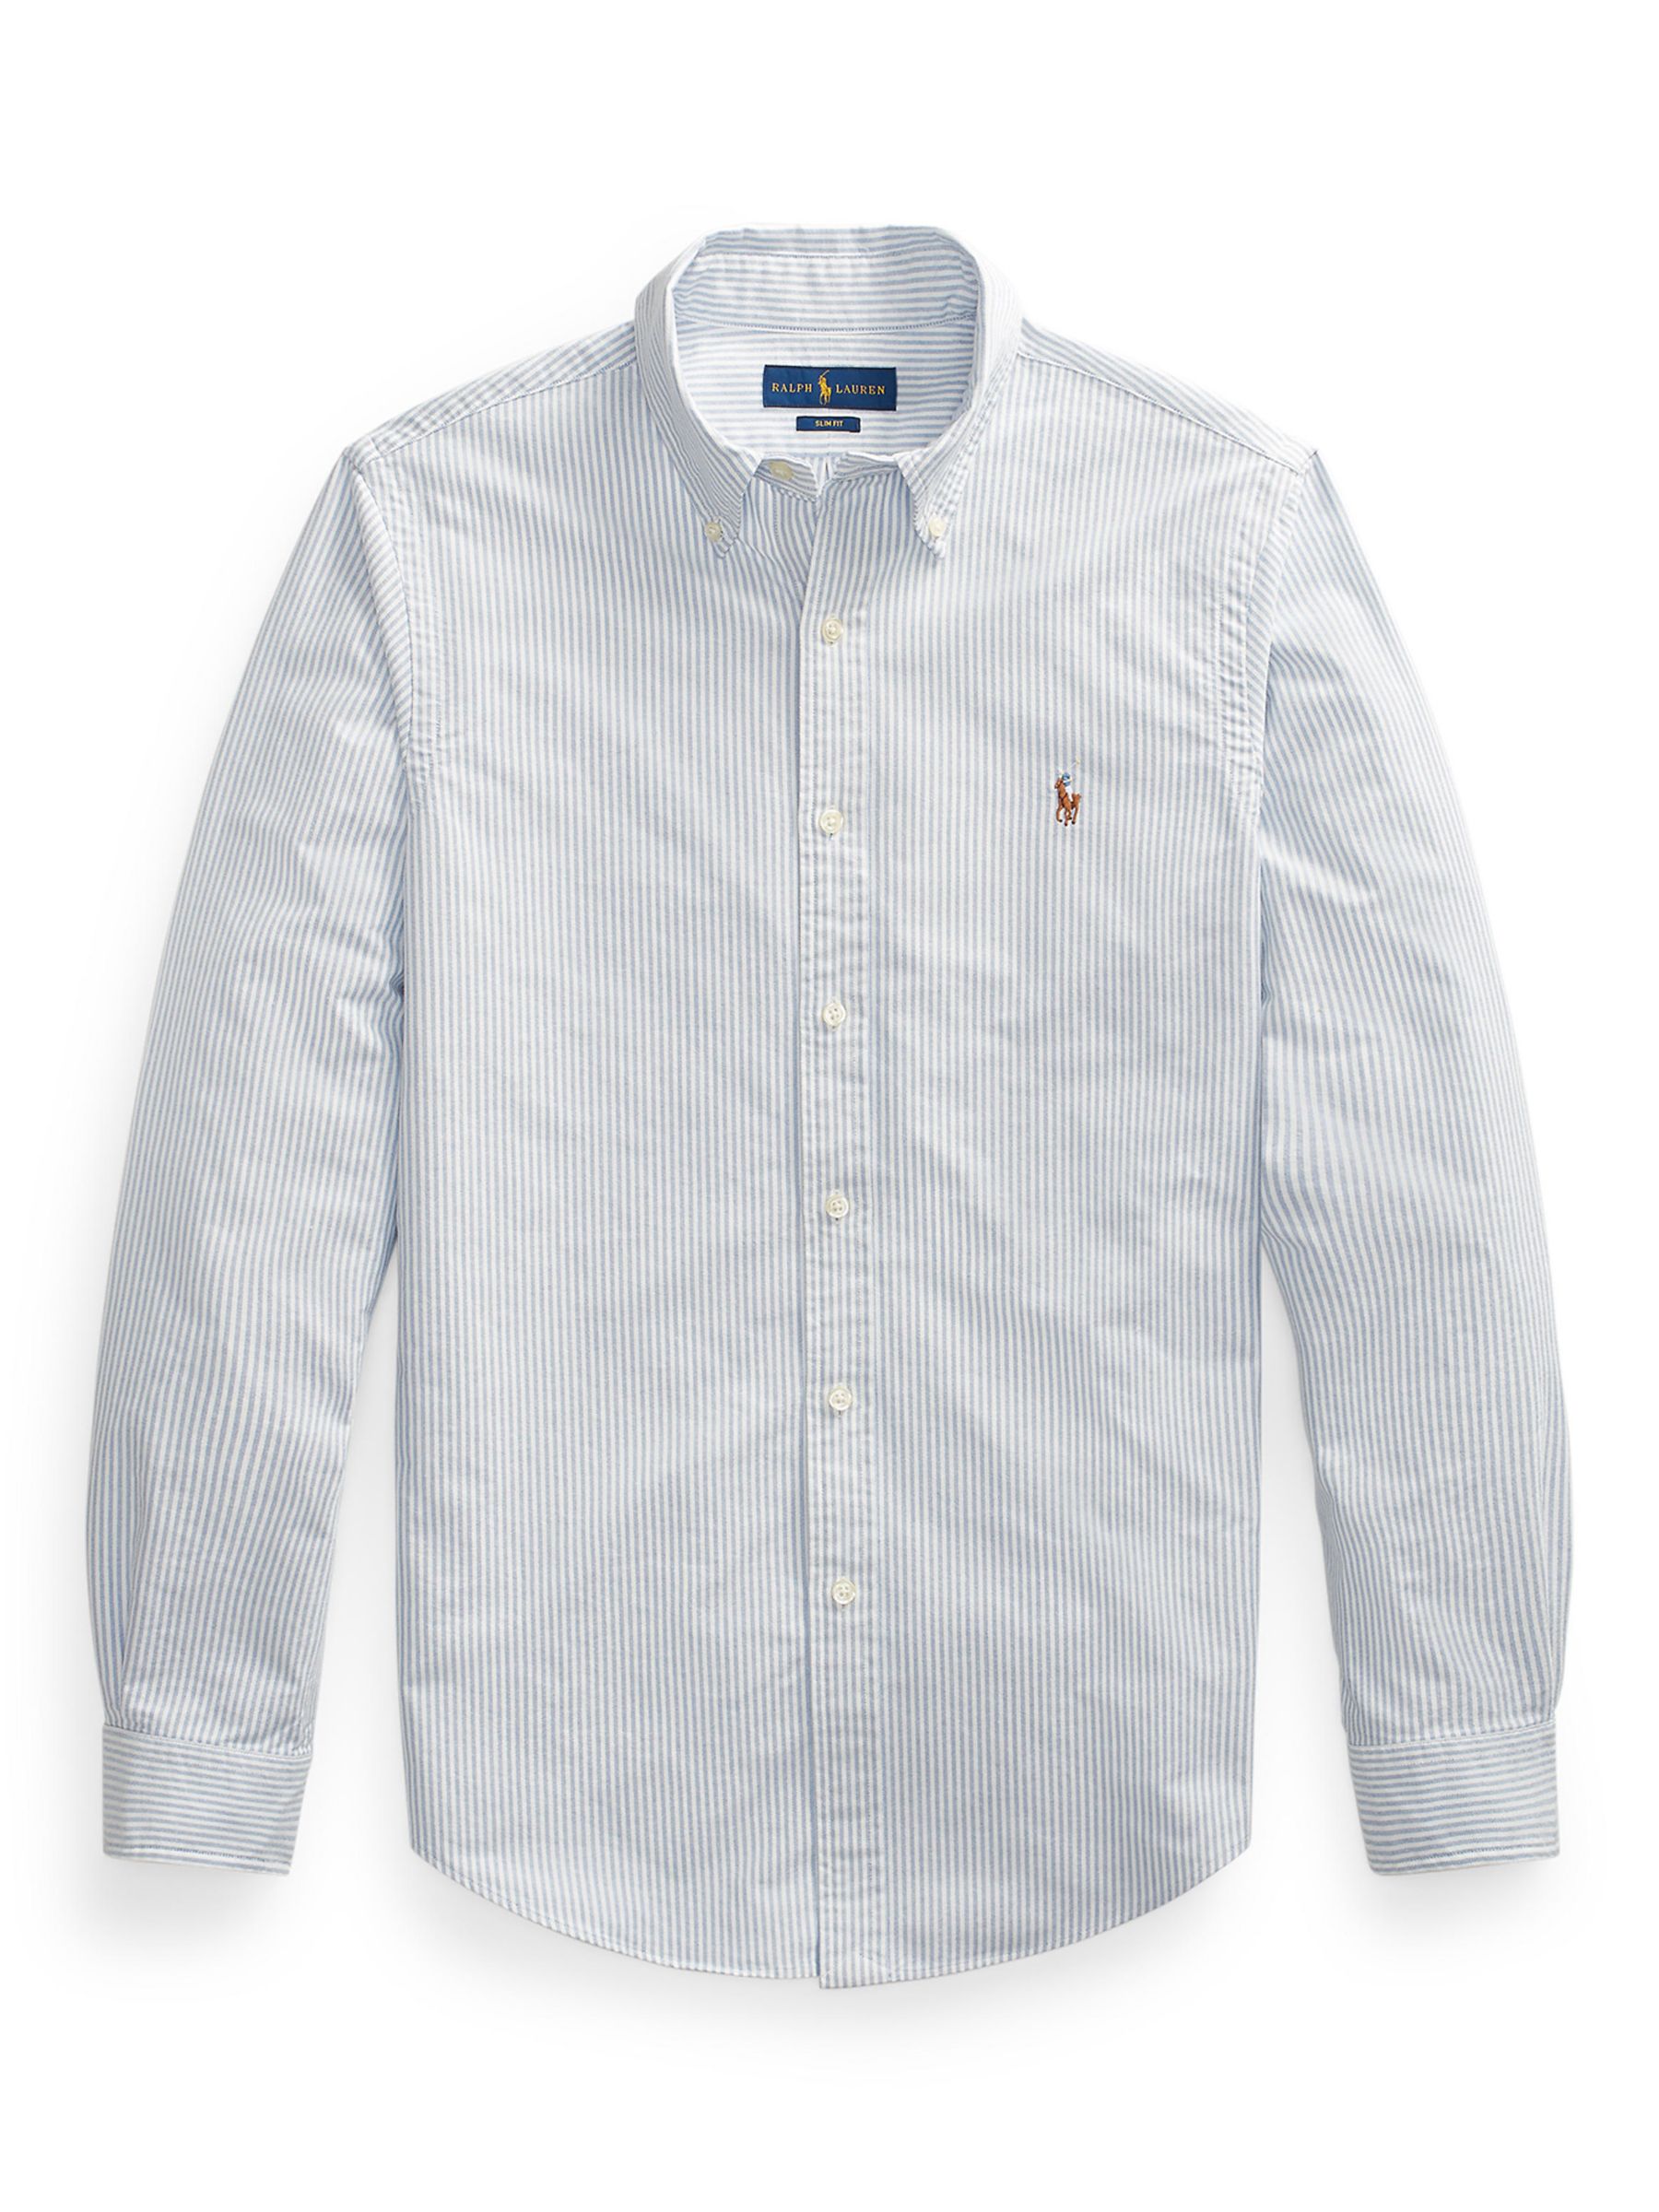 polo white oxford shirt